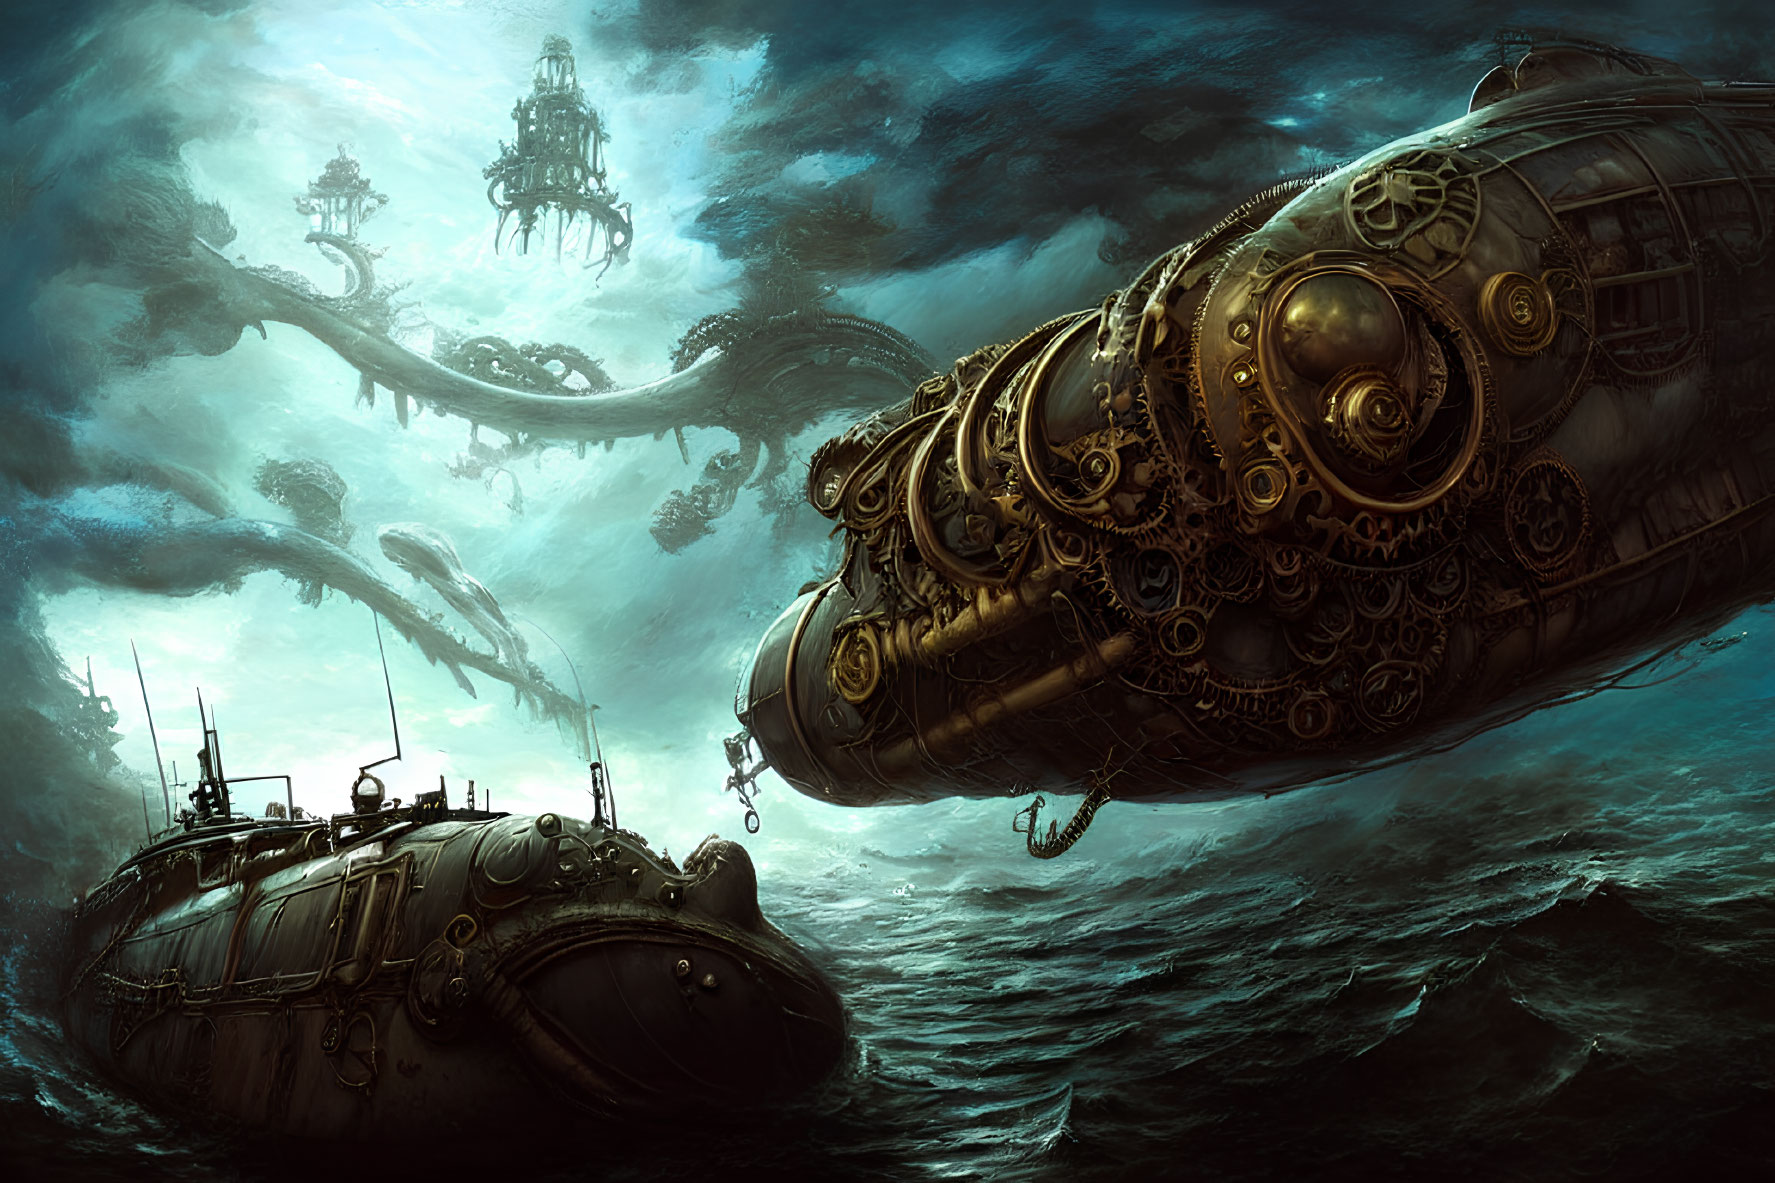 Steampunk-style submarine exploring dark underwater landscape